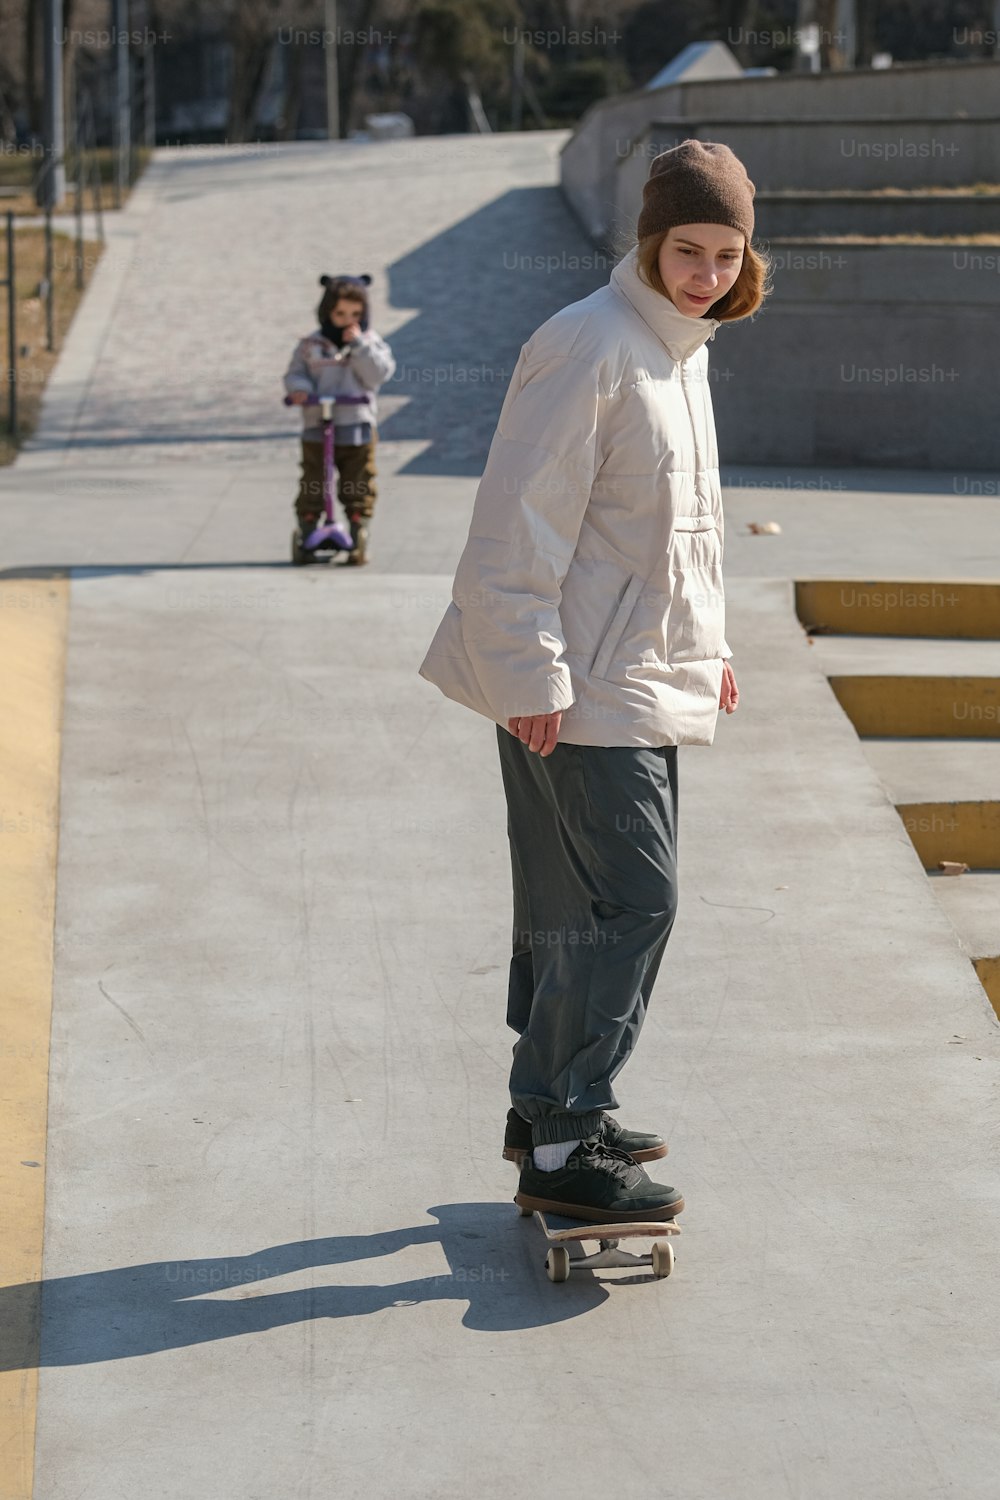 Un giovane che cavalca uno skateboard lungo un marciapiede